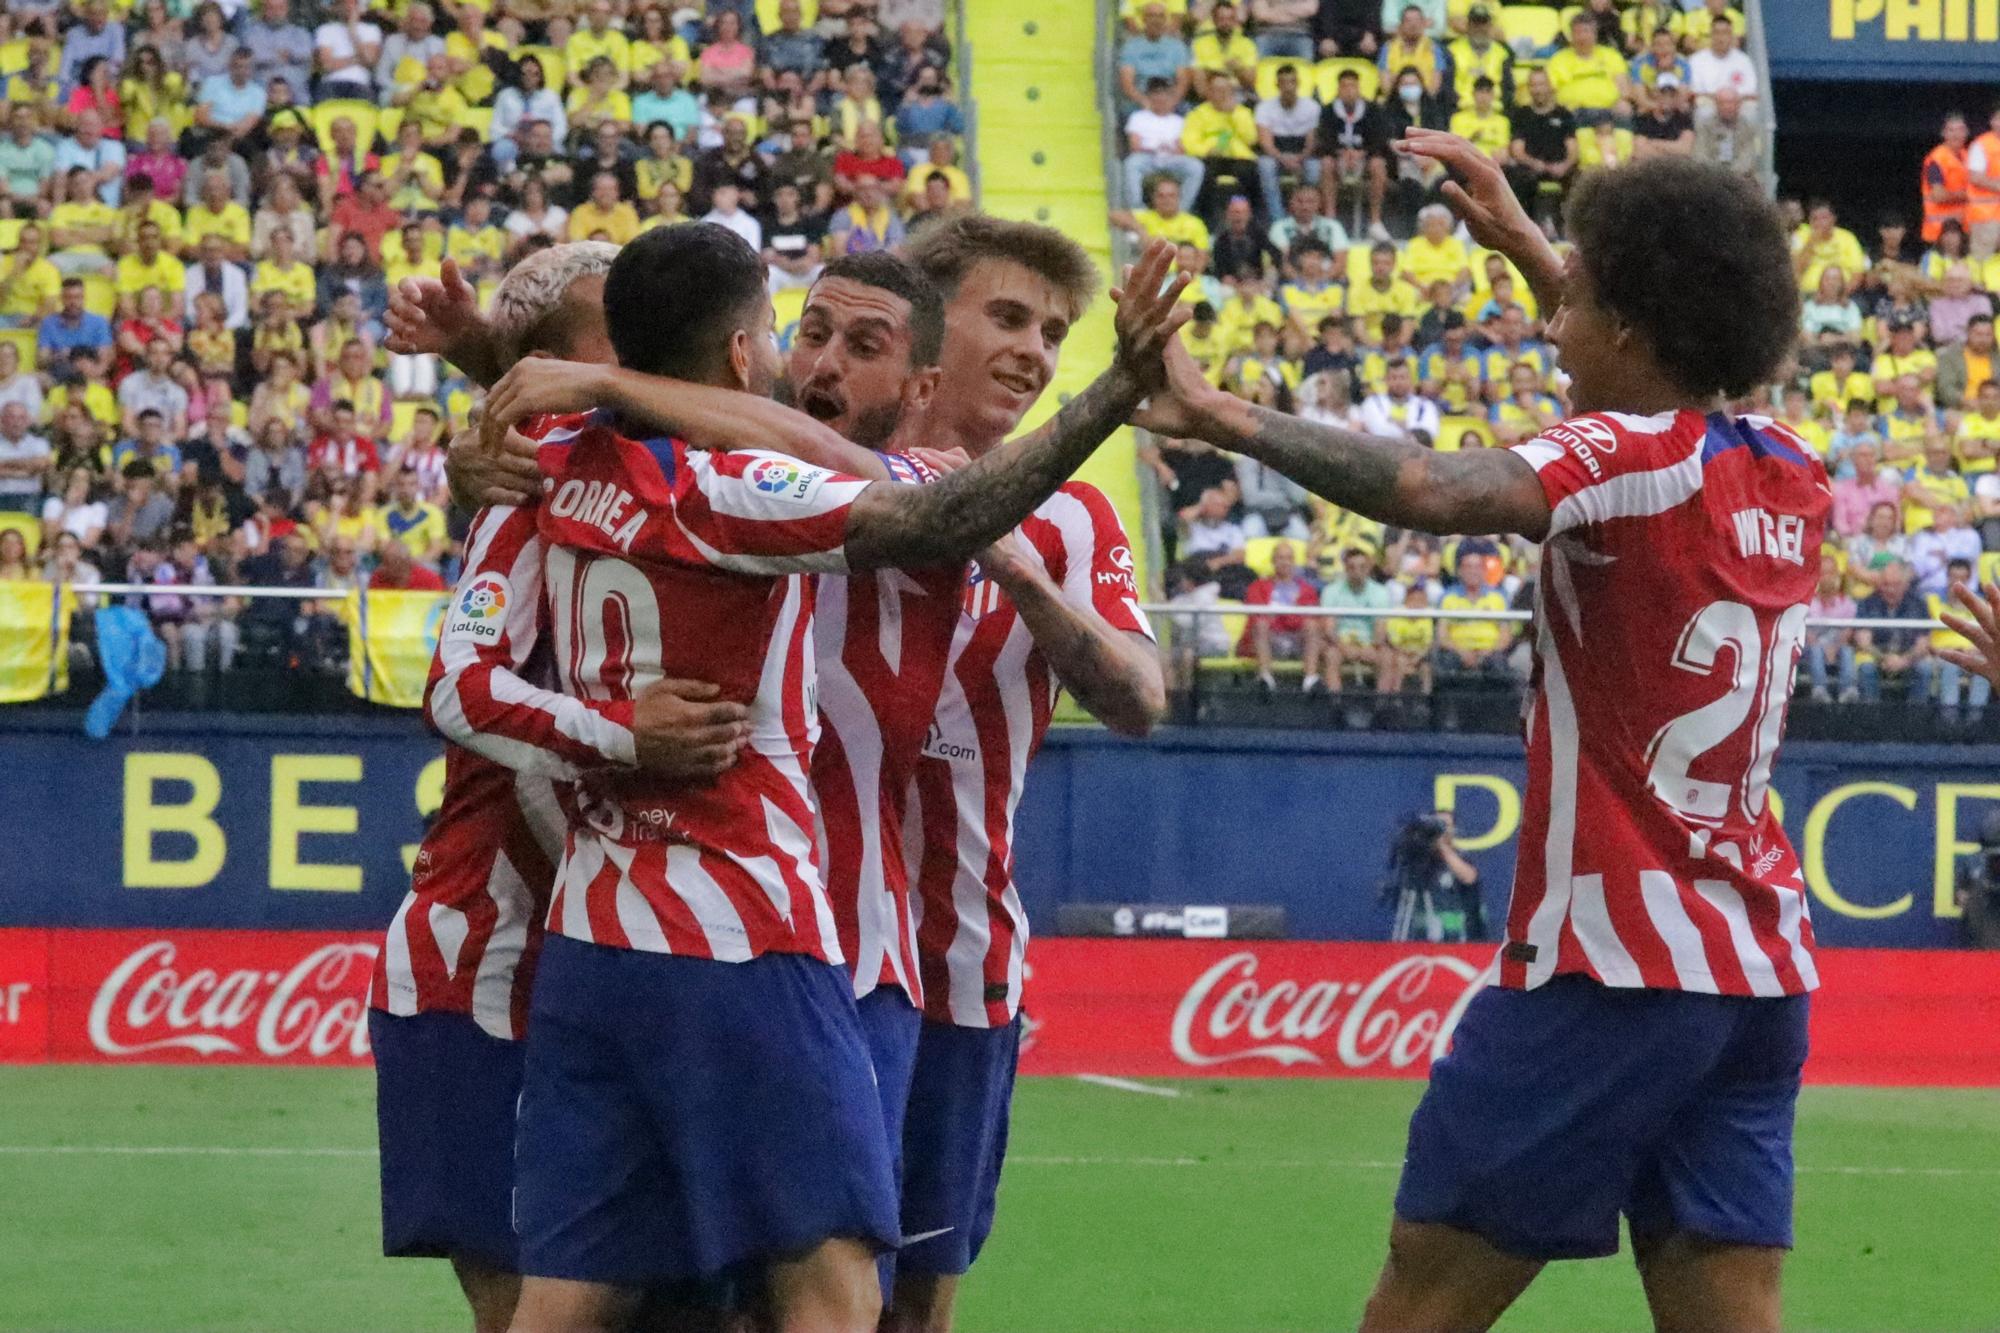 Galería | Las mejores imágenes de la afición amarilla en la previa del Villarreal-Atlético de Madrid